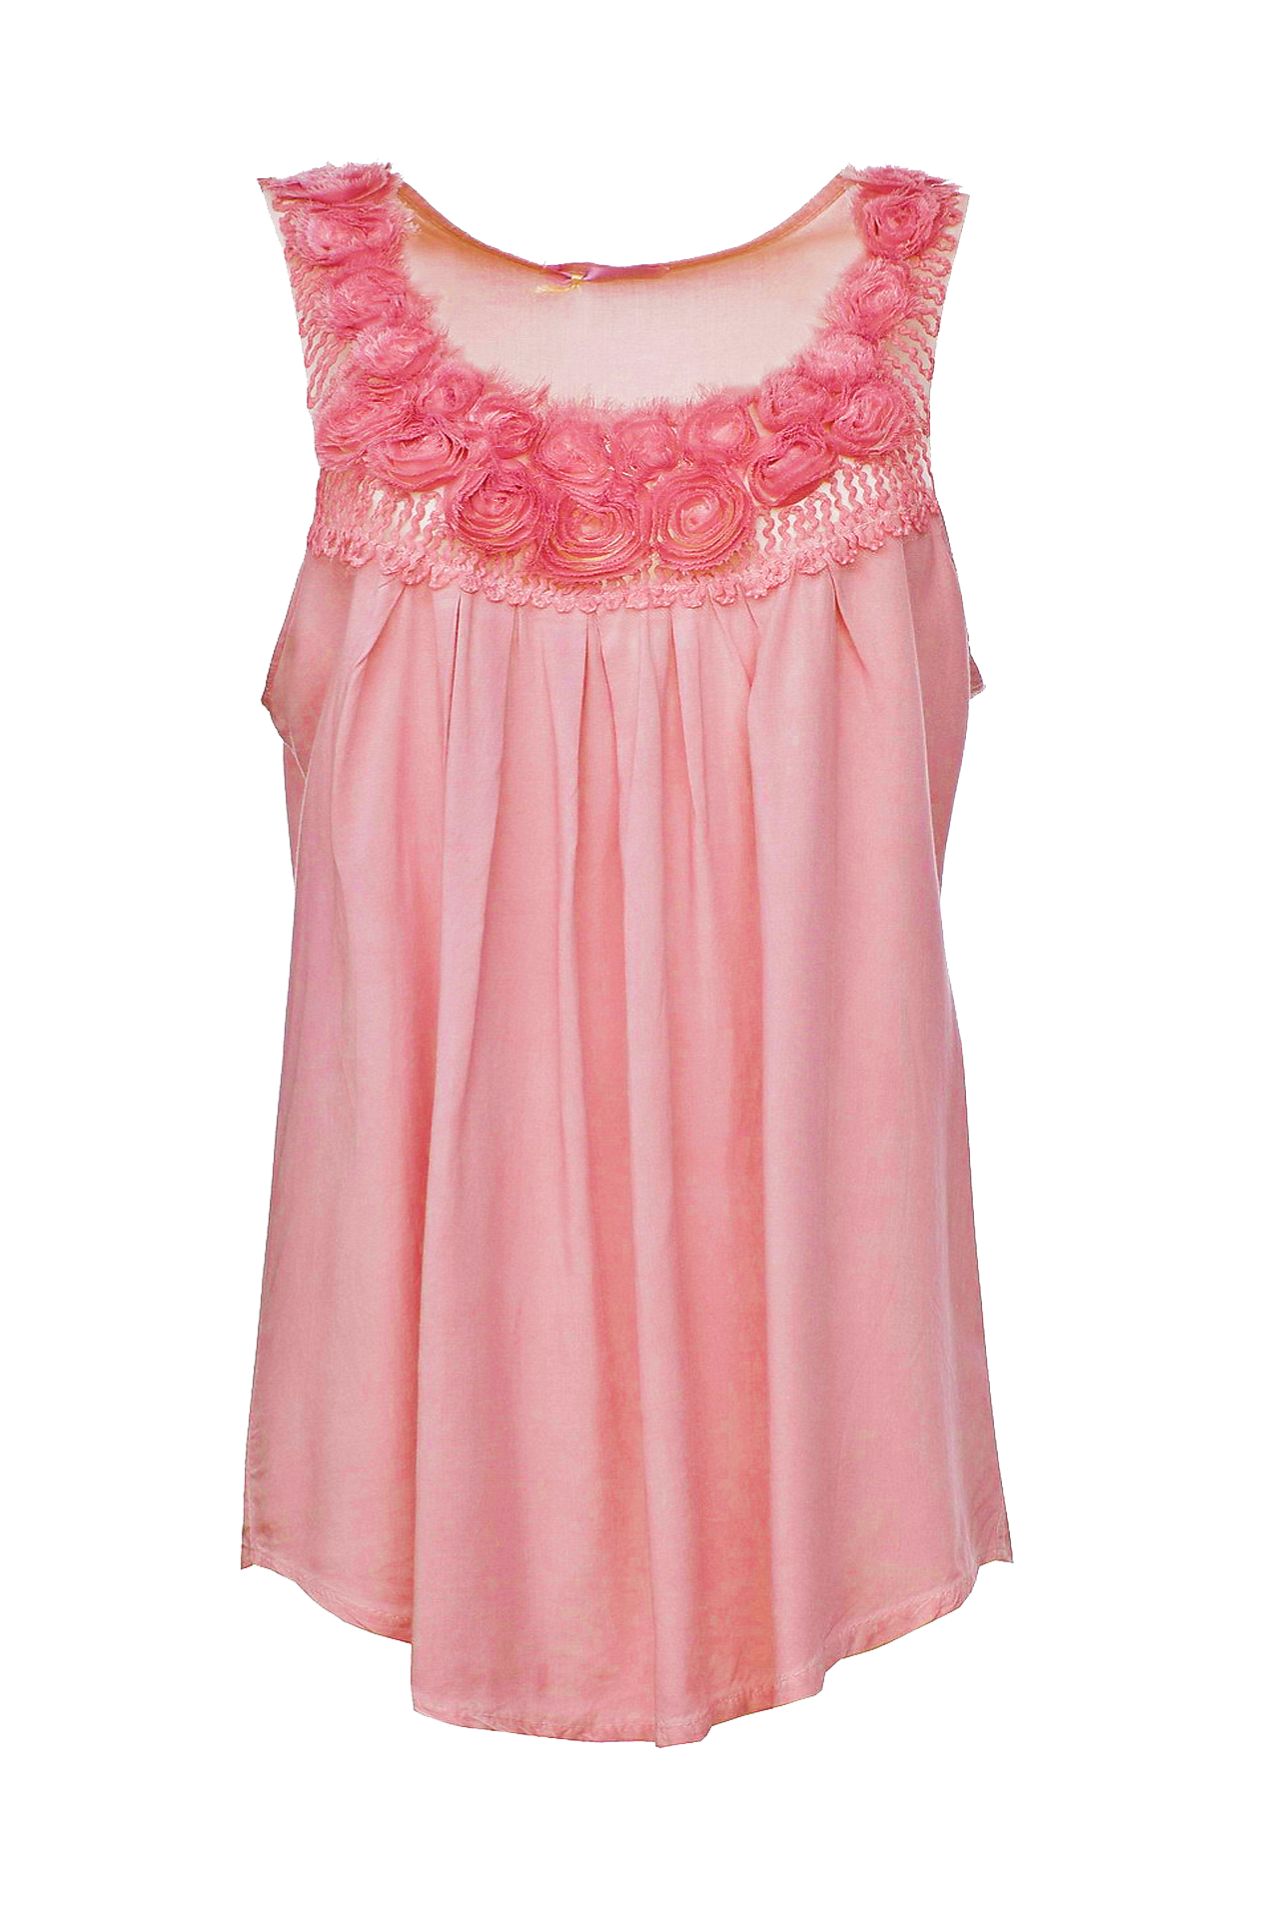 Одежда женская Майка LI LI FASHION (2186/0012). Купить за 2450 руб.